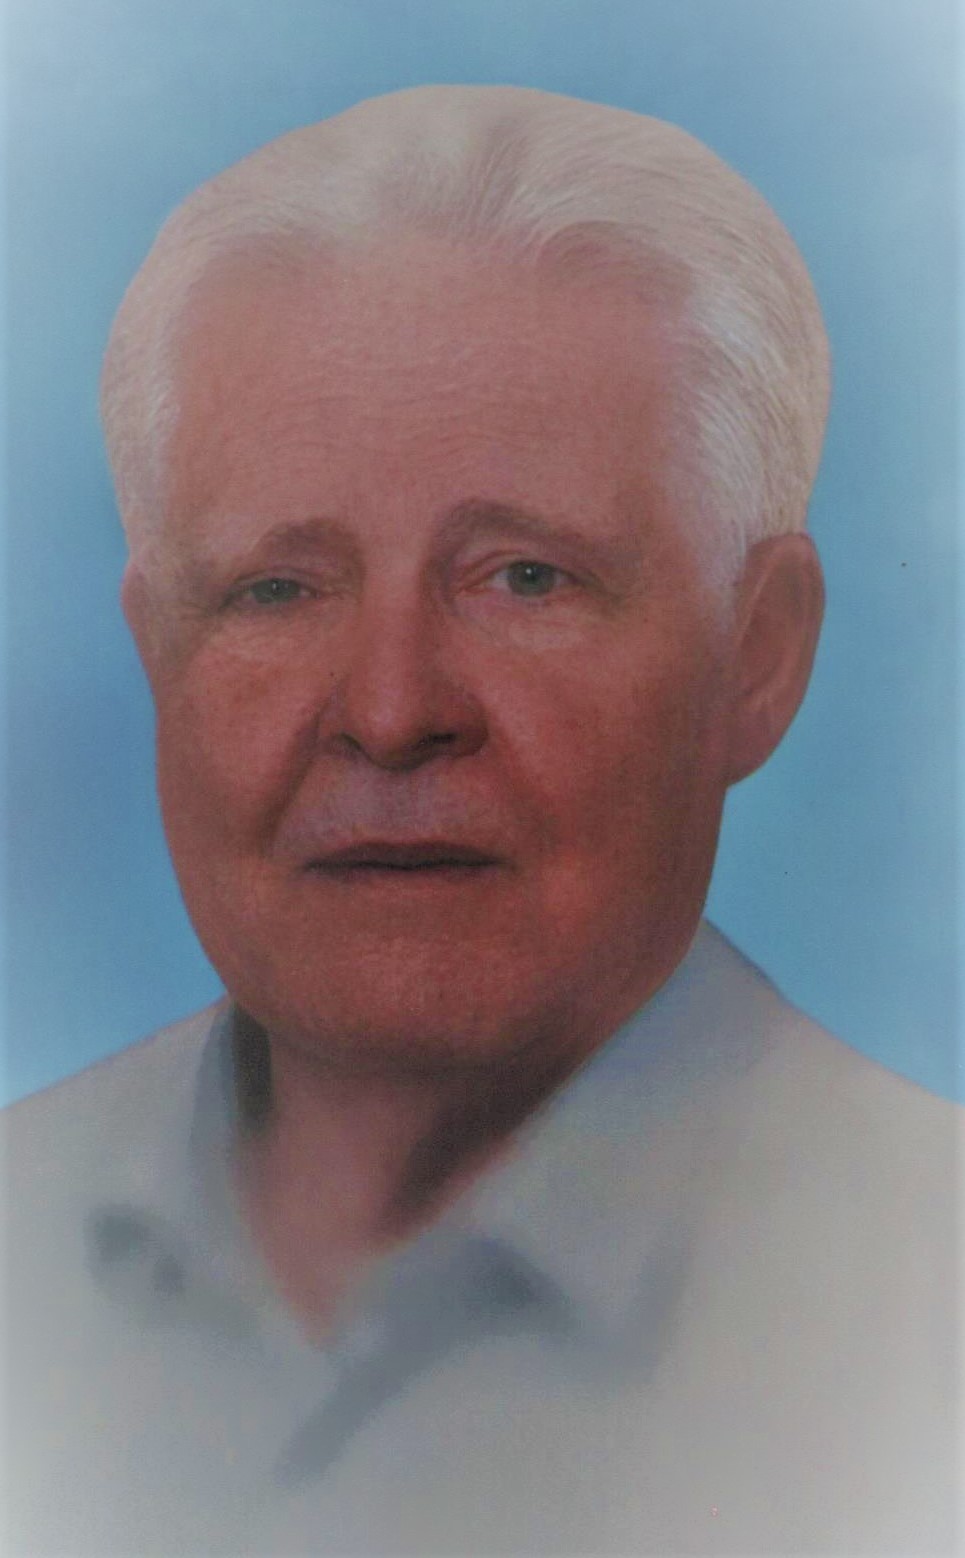 Έφυγε από την ζωή o Γρηγόριος Ζαρκογιάννης σε ηλικία 92 ετών – Η κηδεία θα τελεστεί την Τετάρτη 01 Φεβρουαρίου